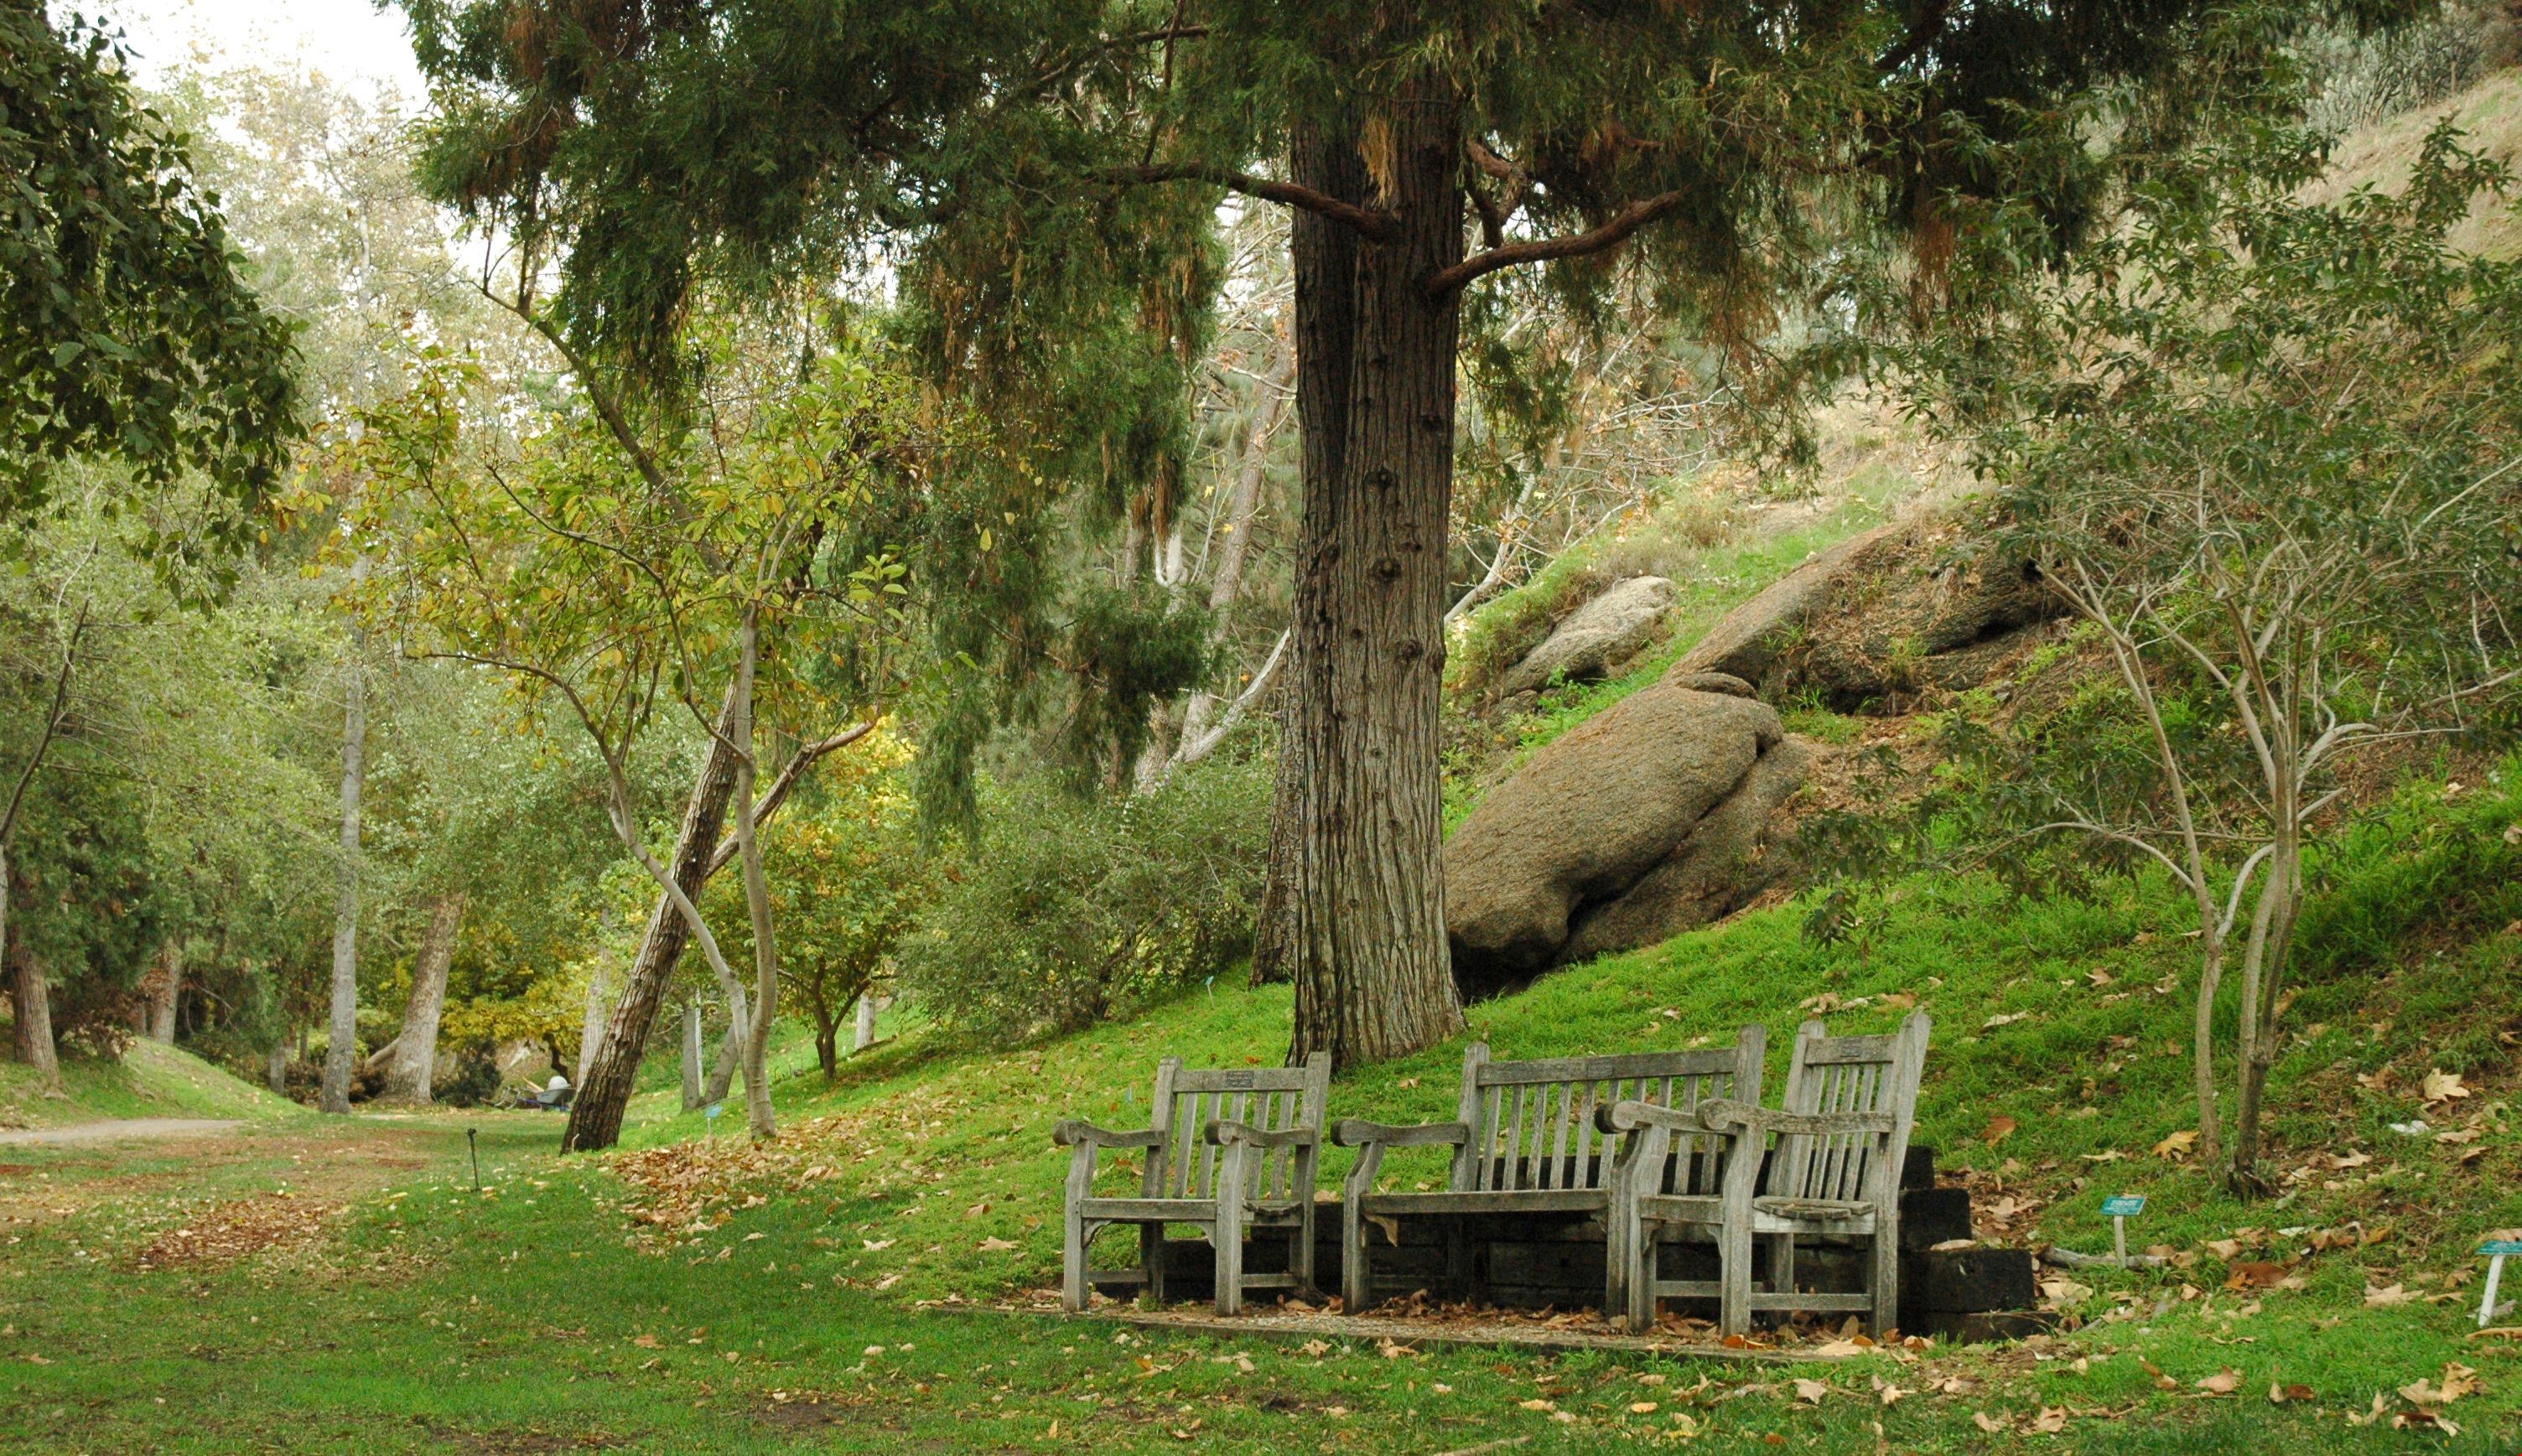 UCR Botanical Gardens: A Living Museum